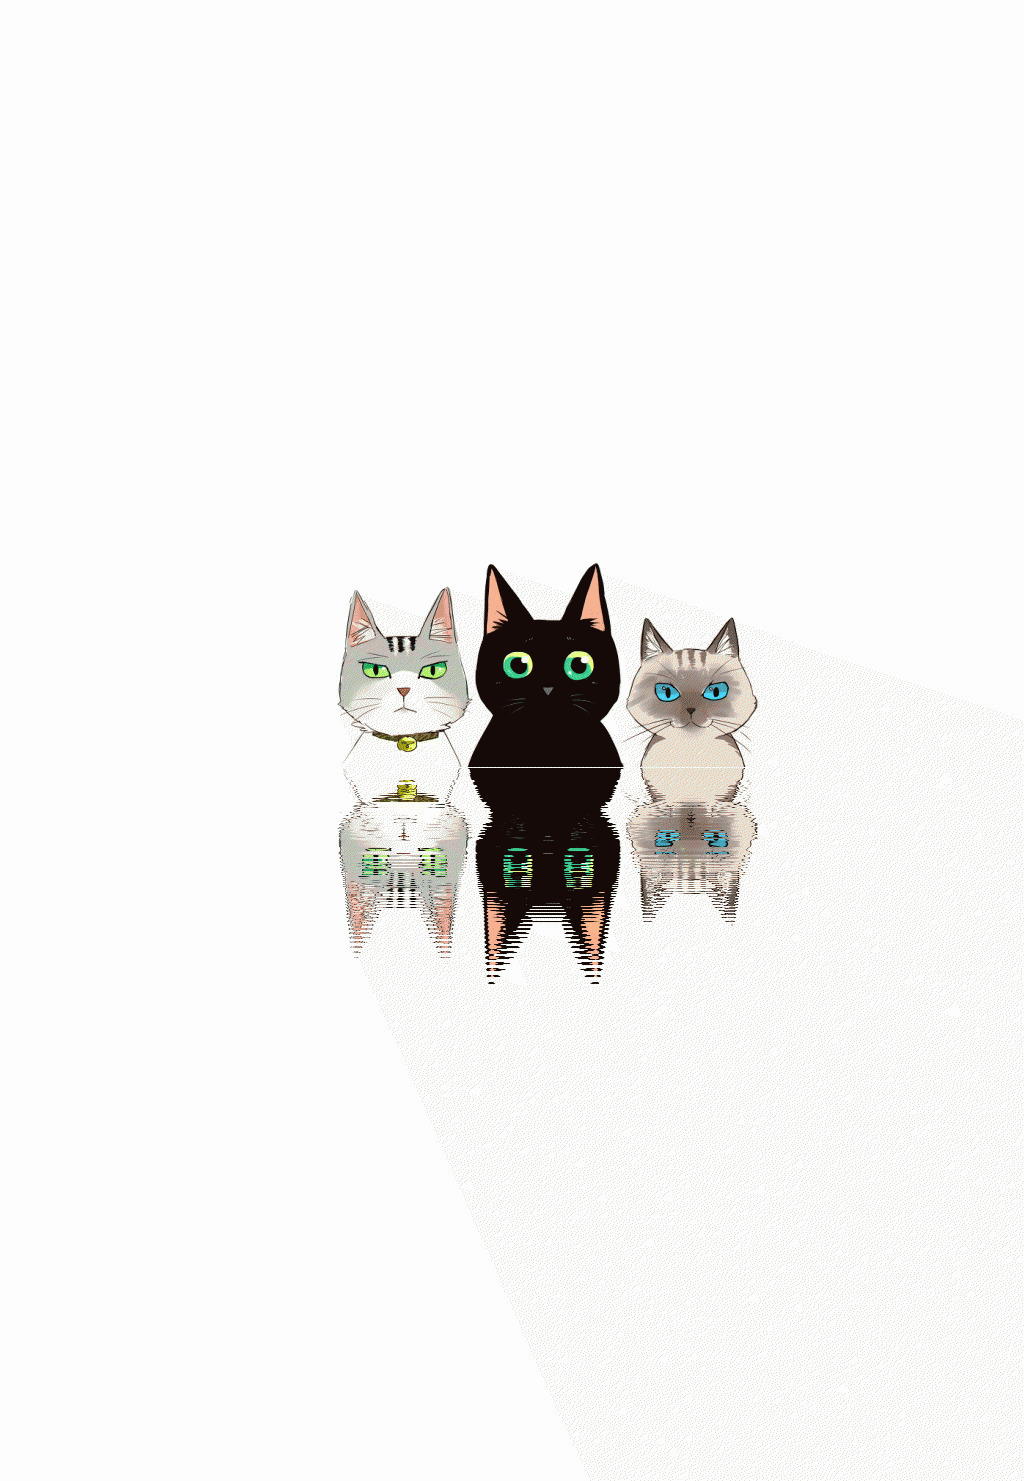 三只猫的倒影动画图片:倒影,猫猫